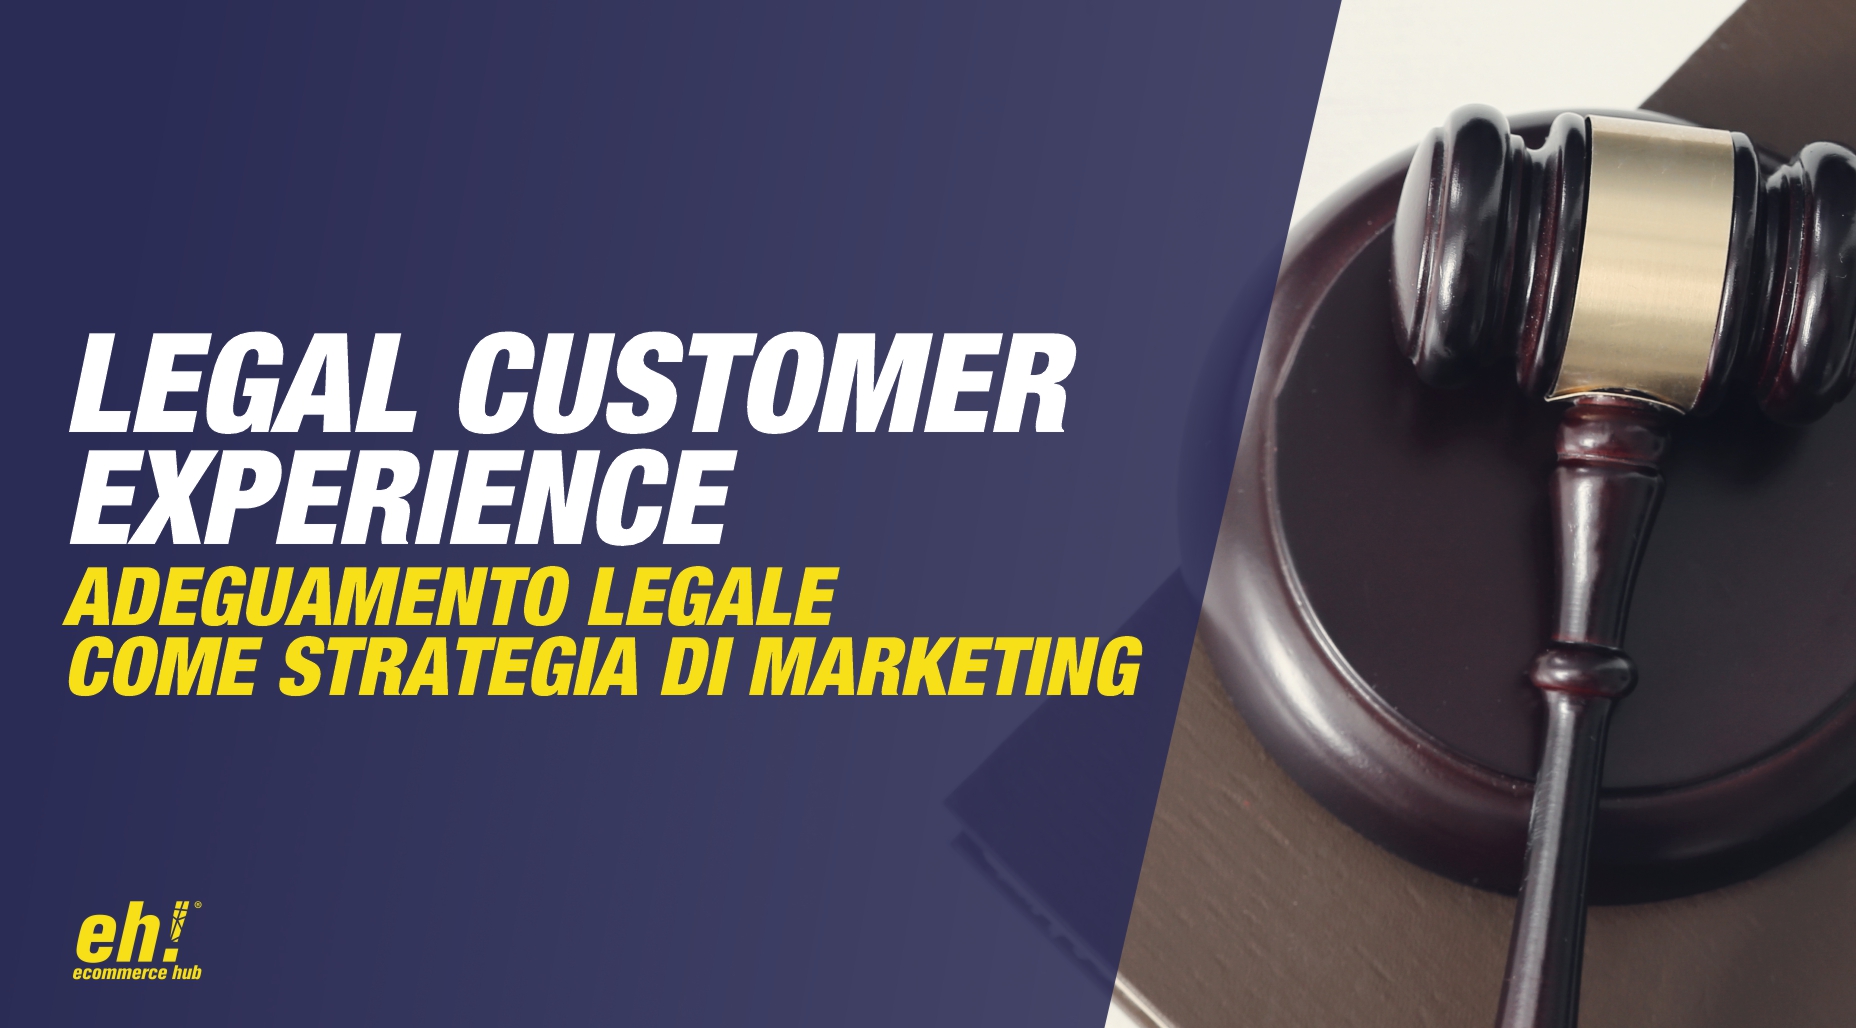 legal customer experience - adeguamento legale ecommerce come strategia di marketing